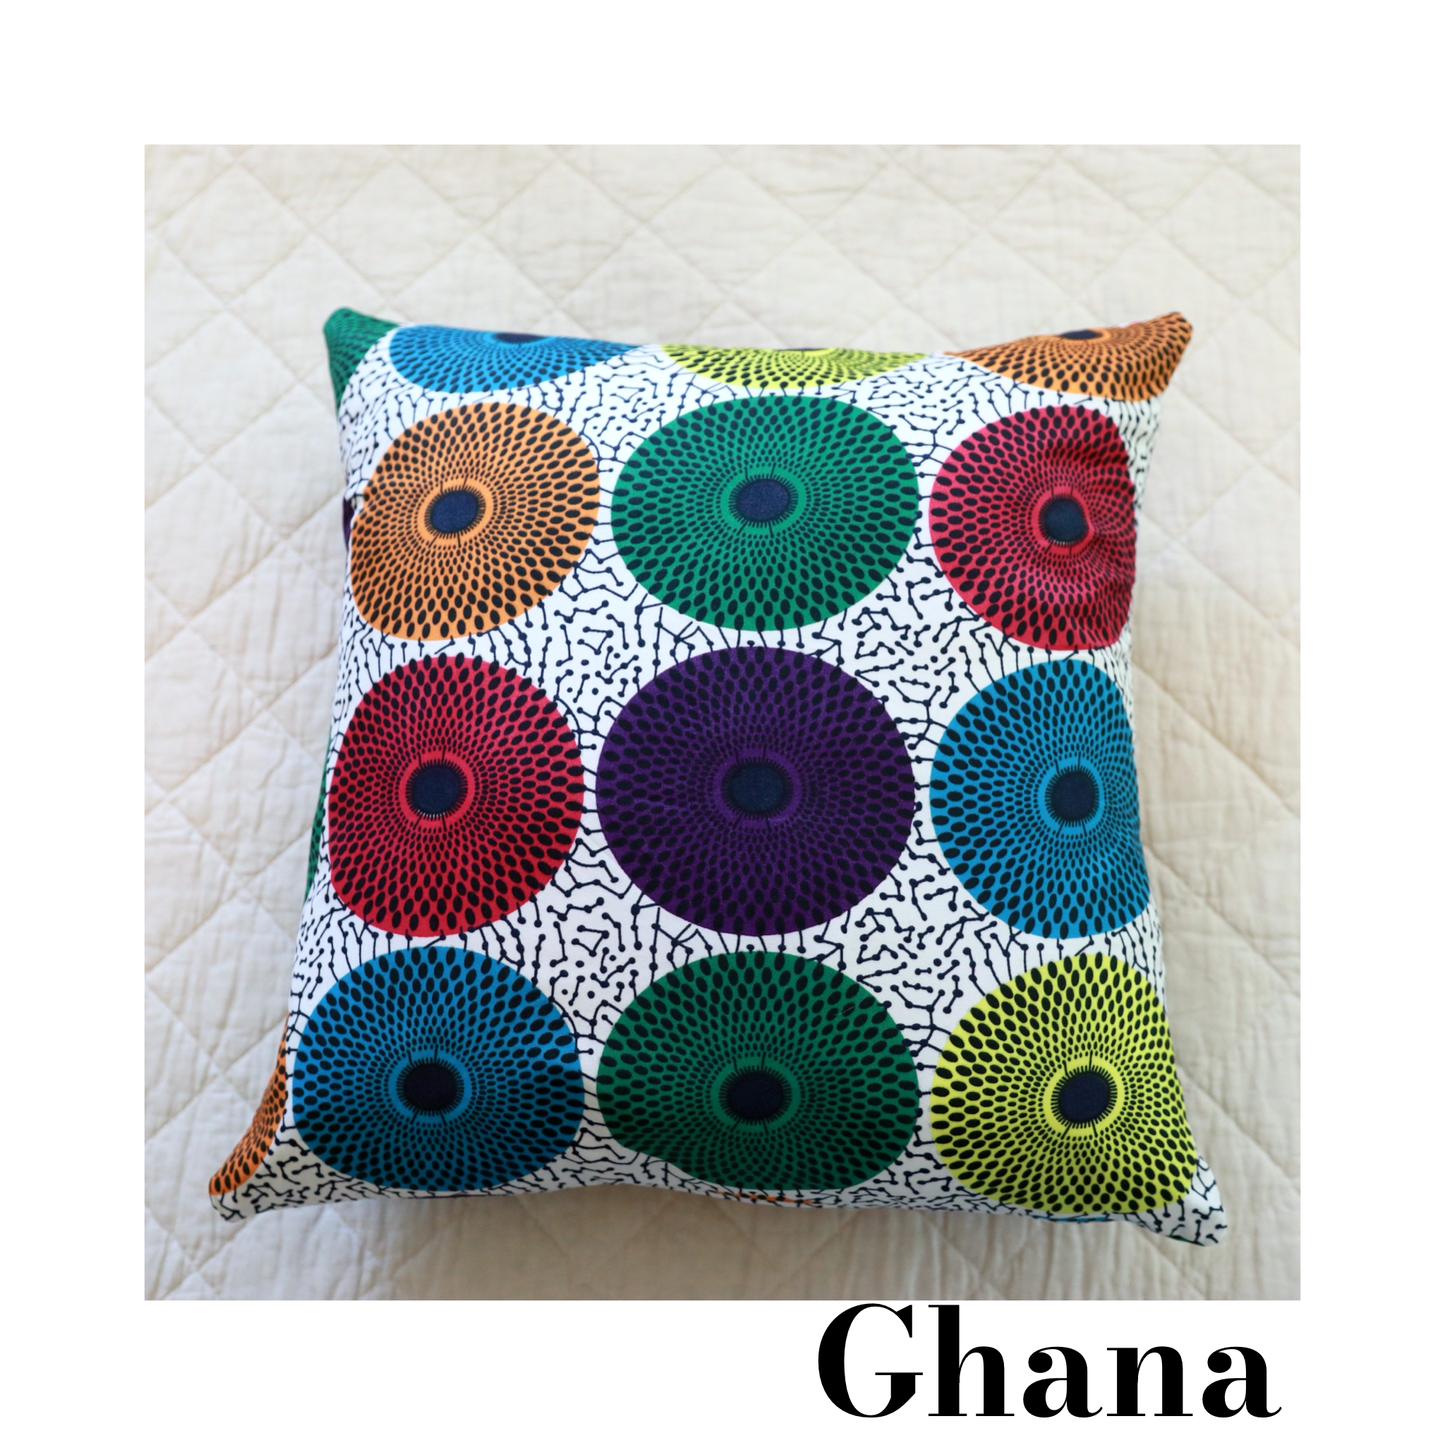 18"x18" African Print Pillows